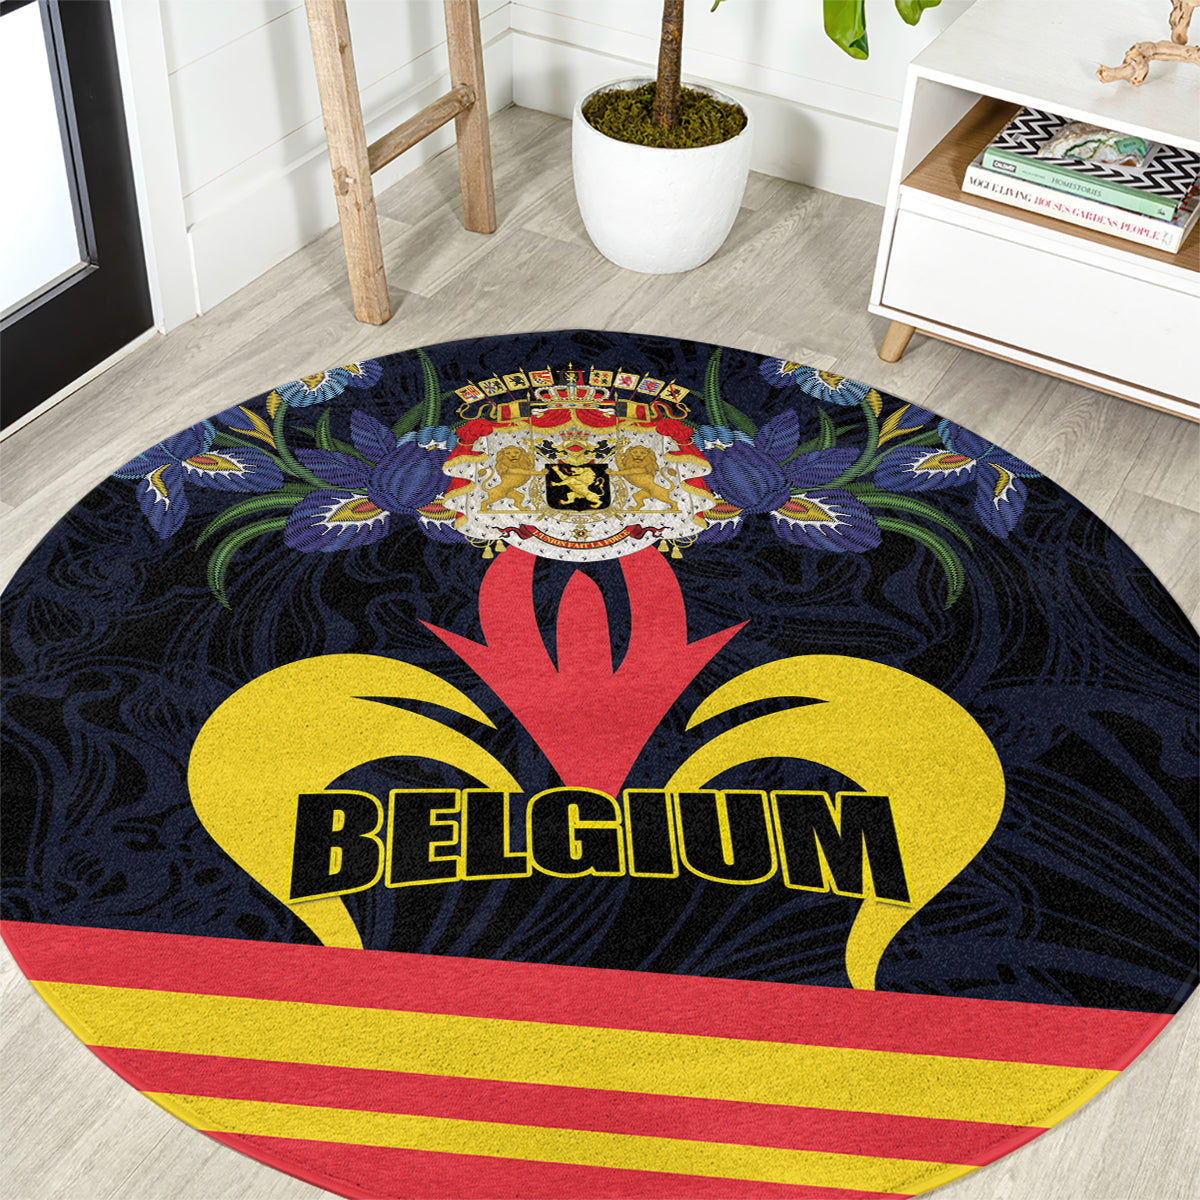 Belgium Iris Day Round Carpet Royaume de Belgique Coat Of Arms